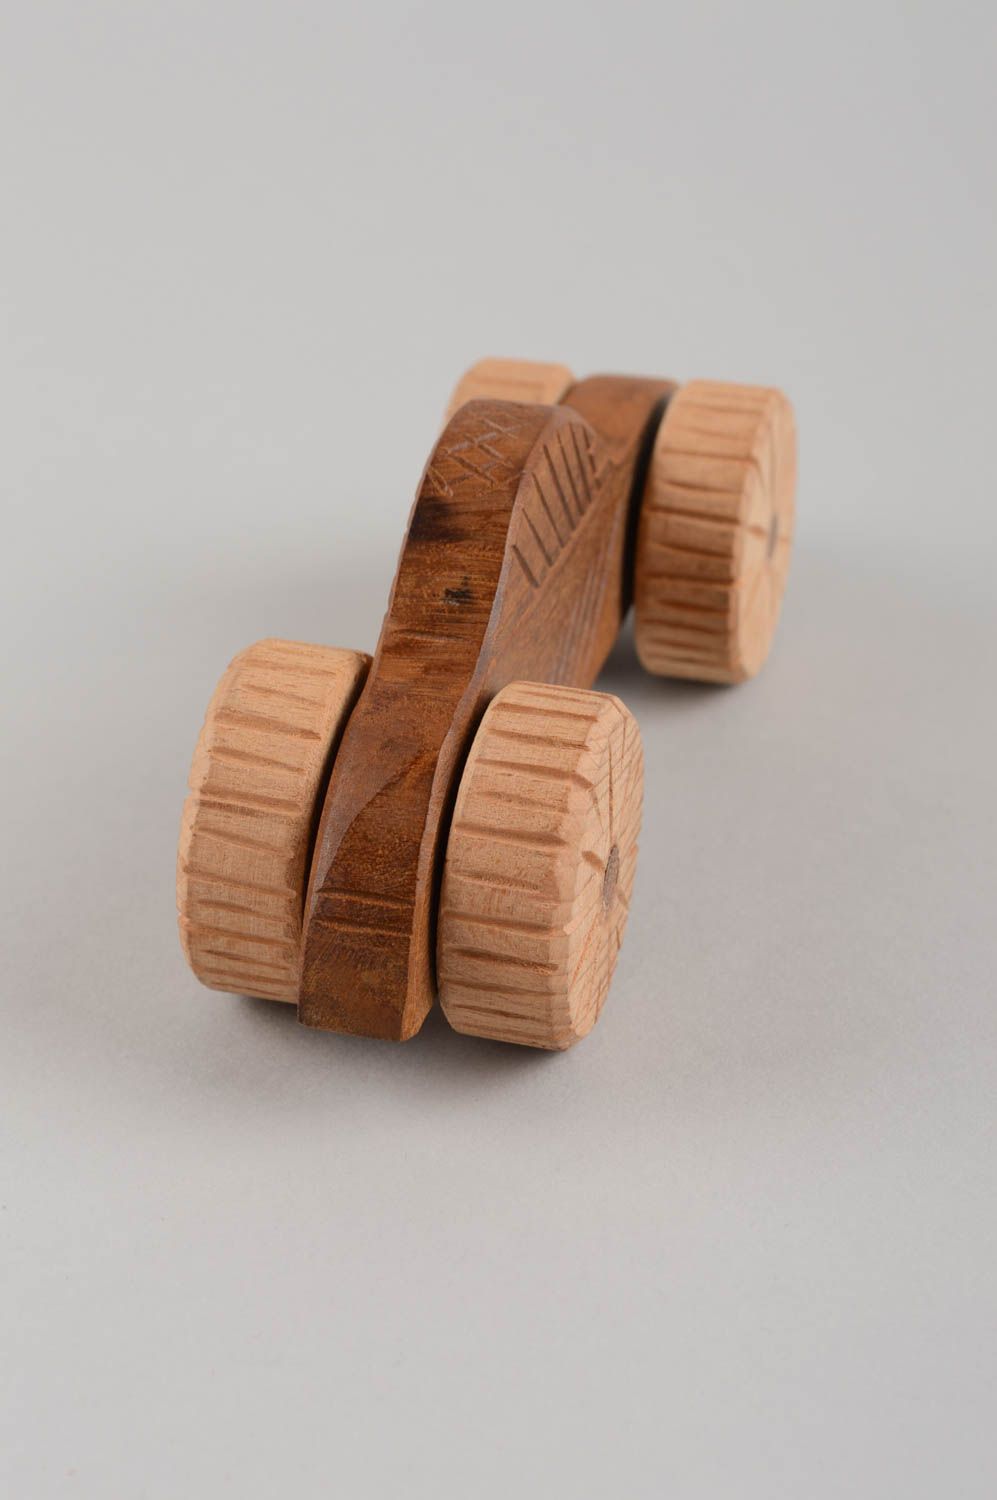 Öko reines ungewöhnliches handgemachtes Zieh Spielzeug Holzspielzeug Auto klein  foto 4